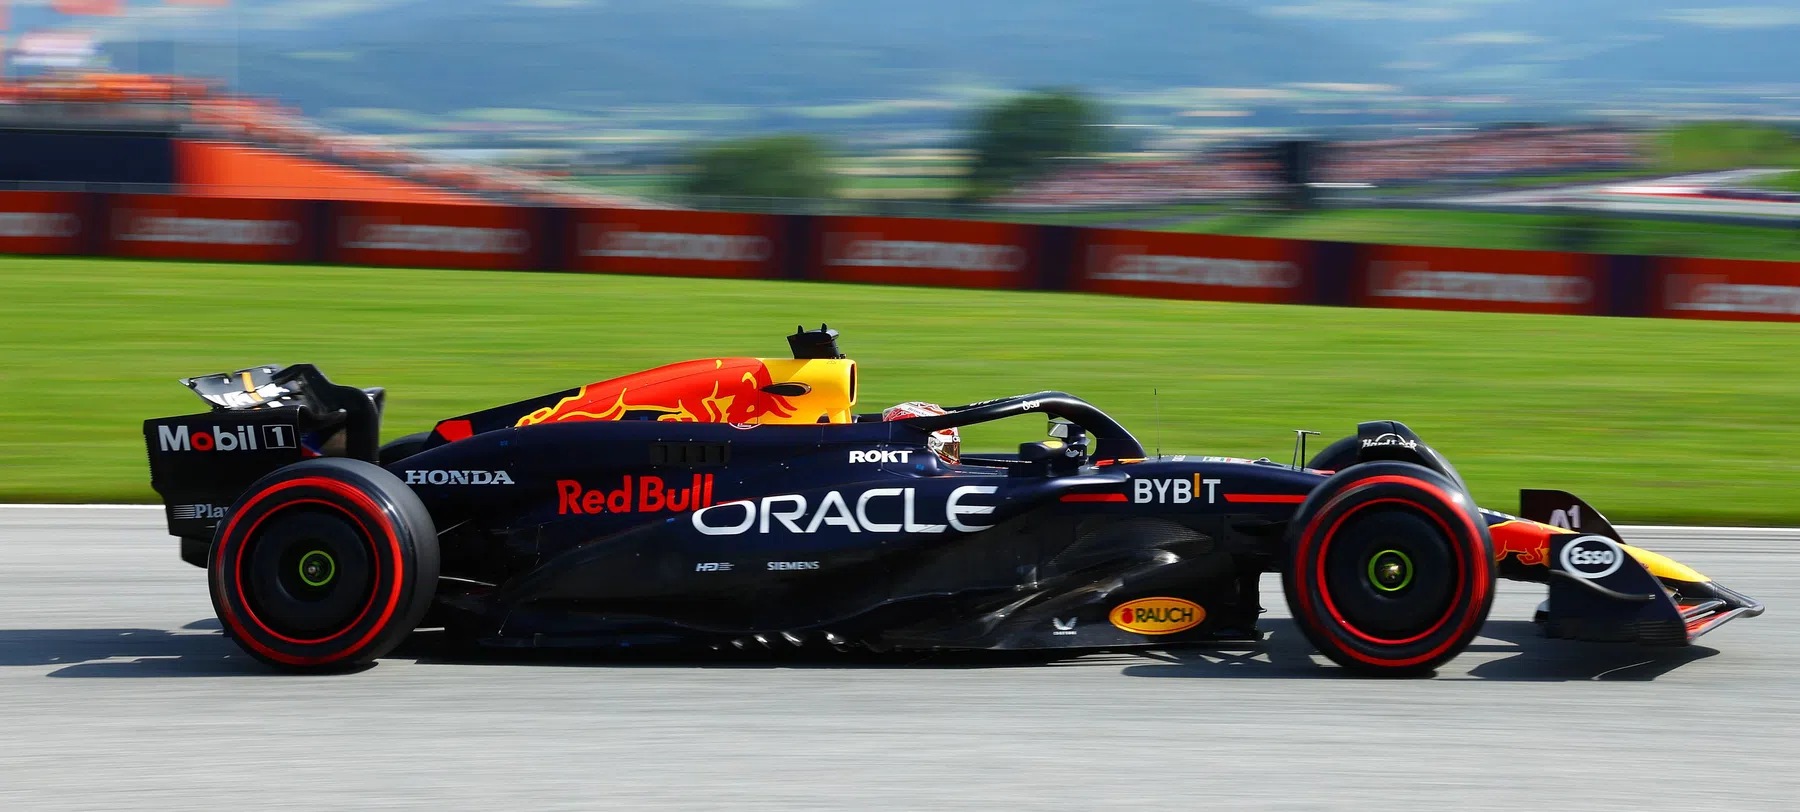 Résultats complets des qualifications du Grand Prix d'Autriche avec Verstappen en pole.